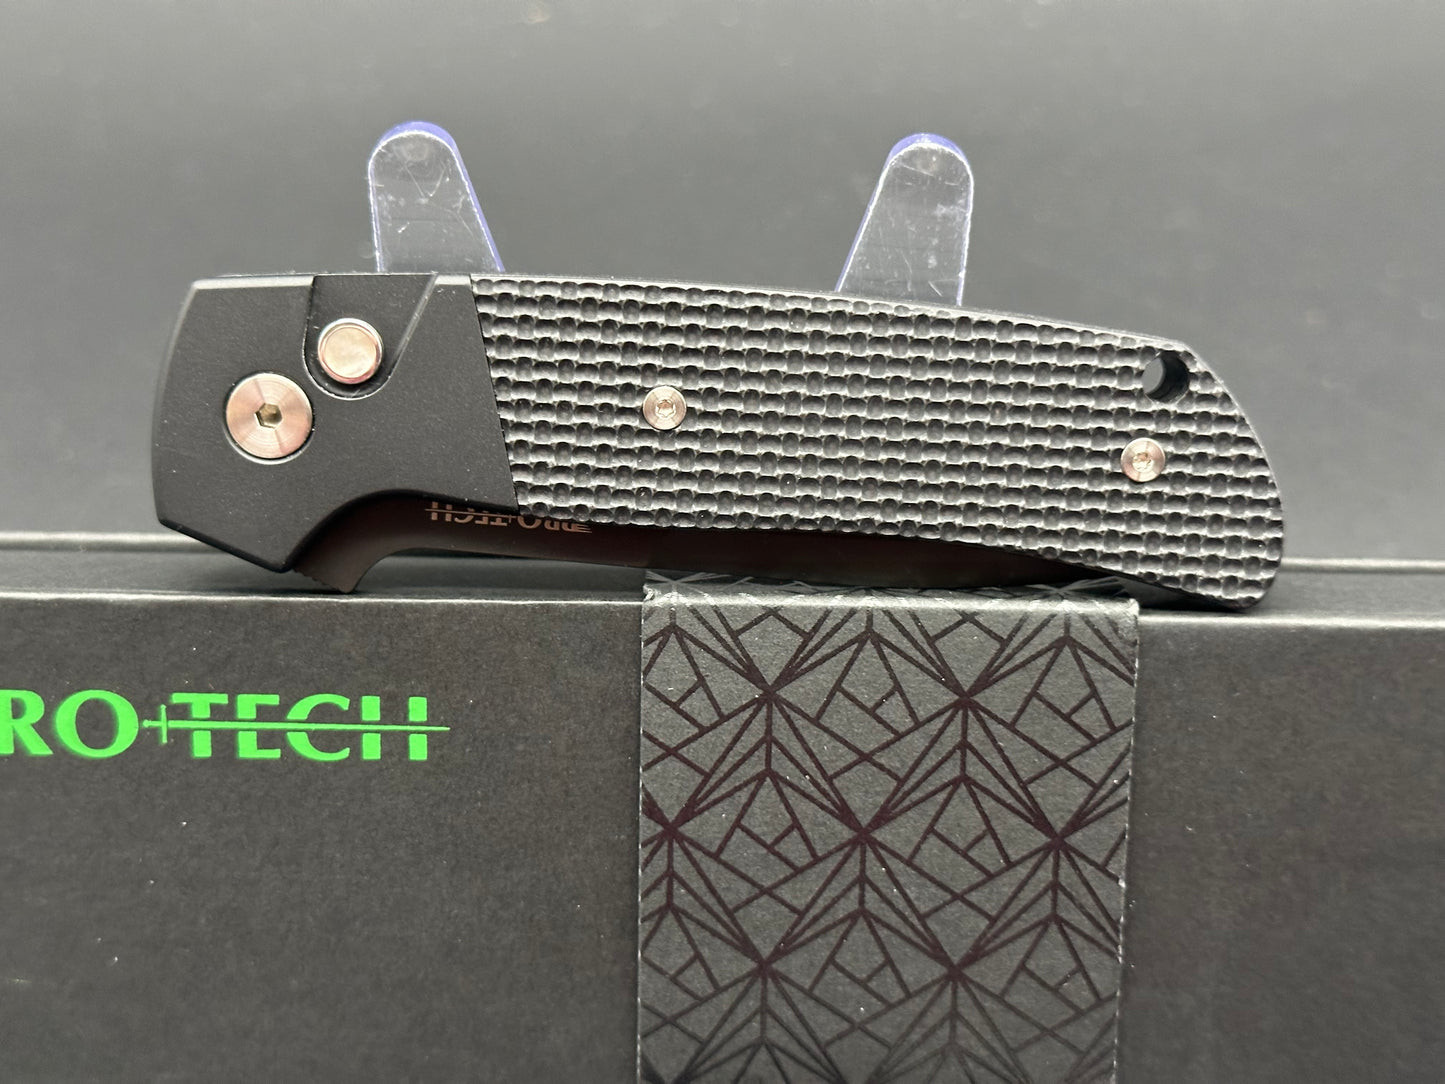 ProTech Terzuola ATCF MagnaCut Automatic Knife Black G-10 (3.5" DLC)